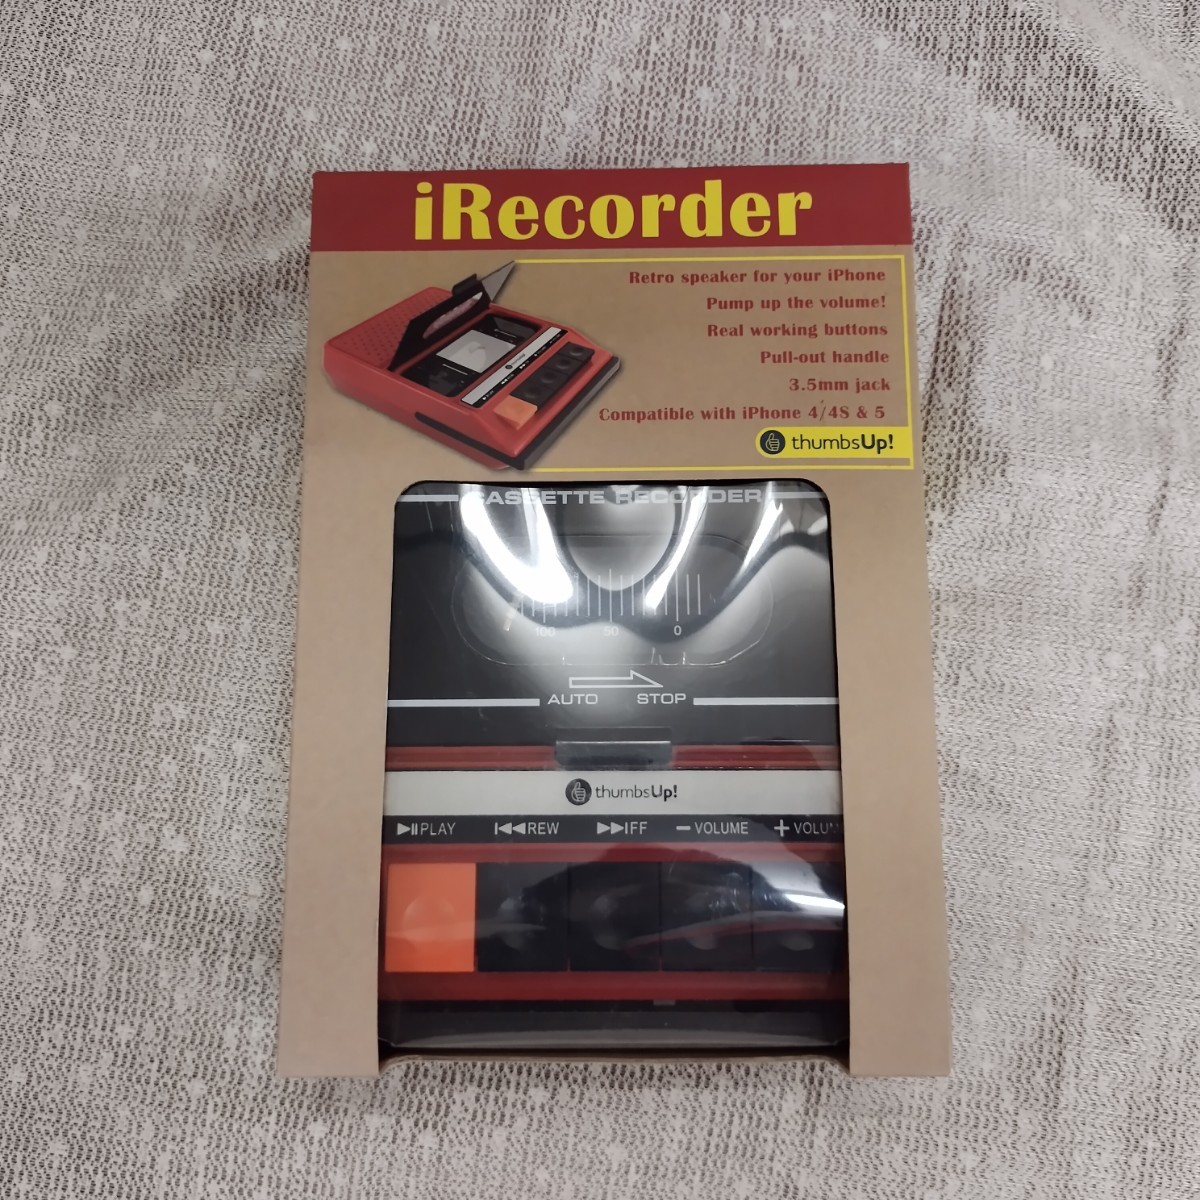 KN121601 未開封品 iRecoder レコーダー型スピーカー 400-493799 ハミィ Hamee レトロカセット風 iPhone専用ポータブルスピーカー _画像2